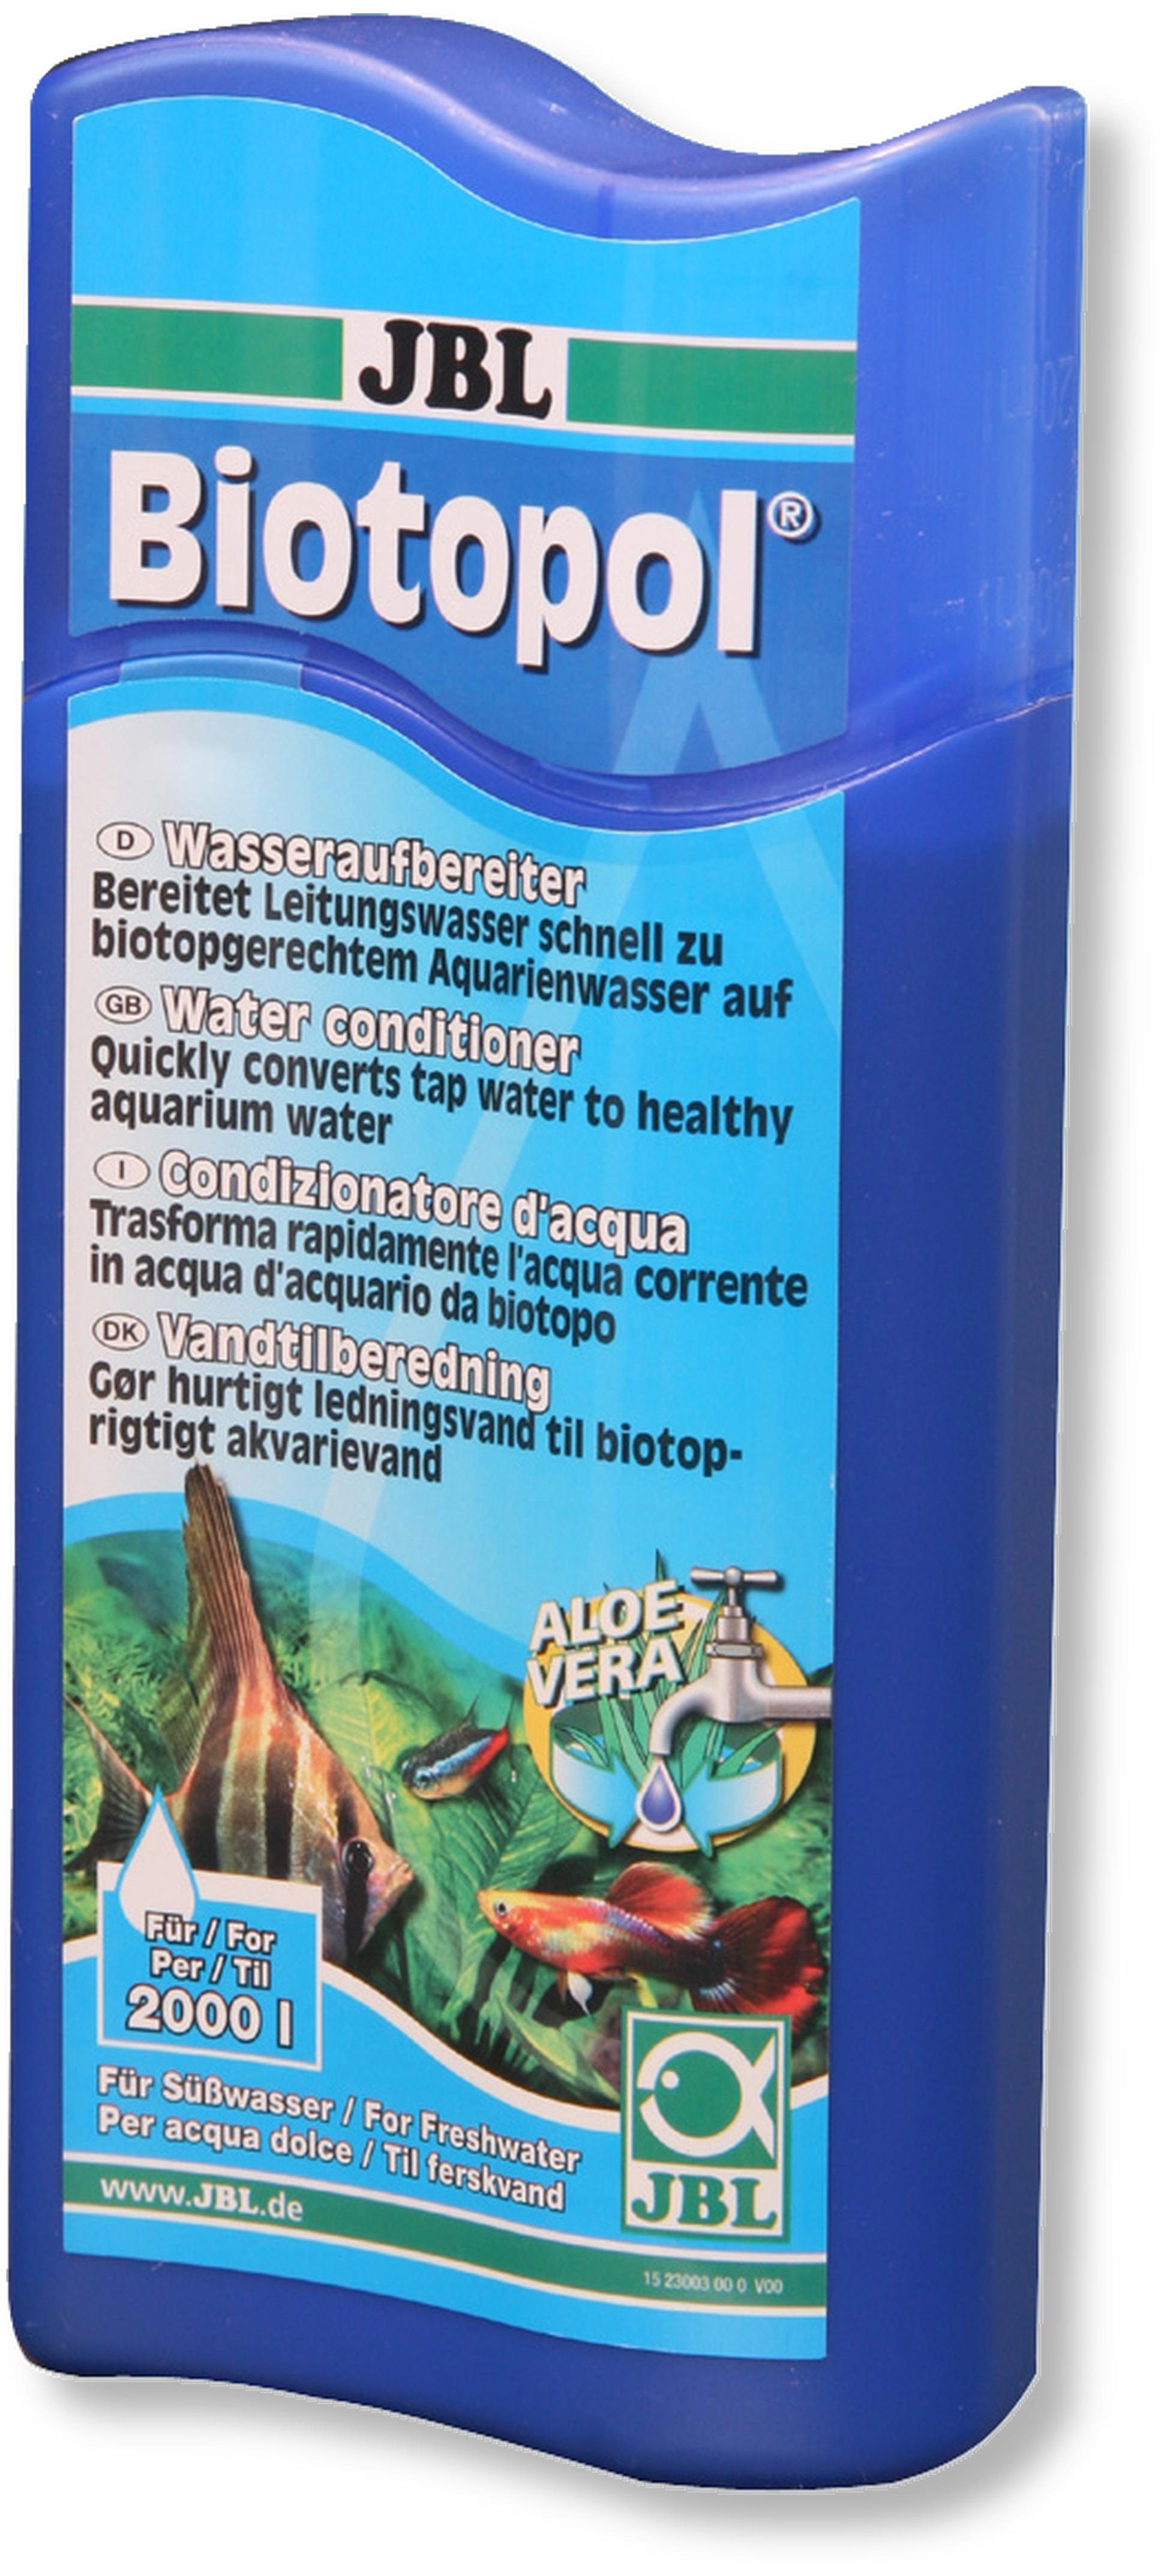 JBL Biotopol, 500 ml